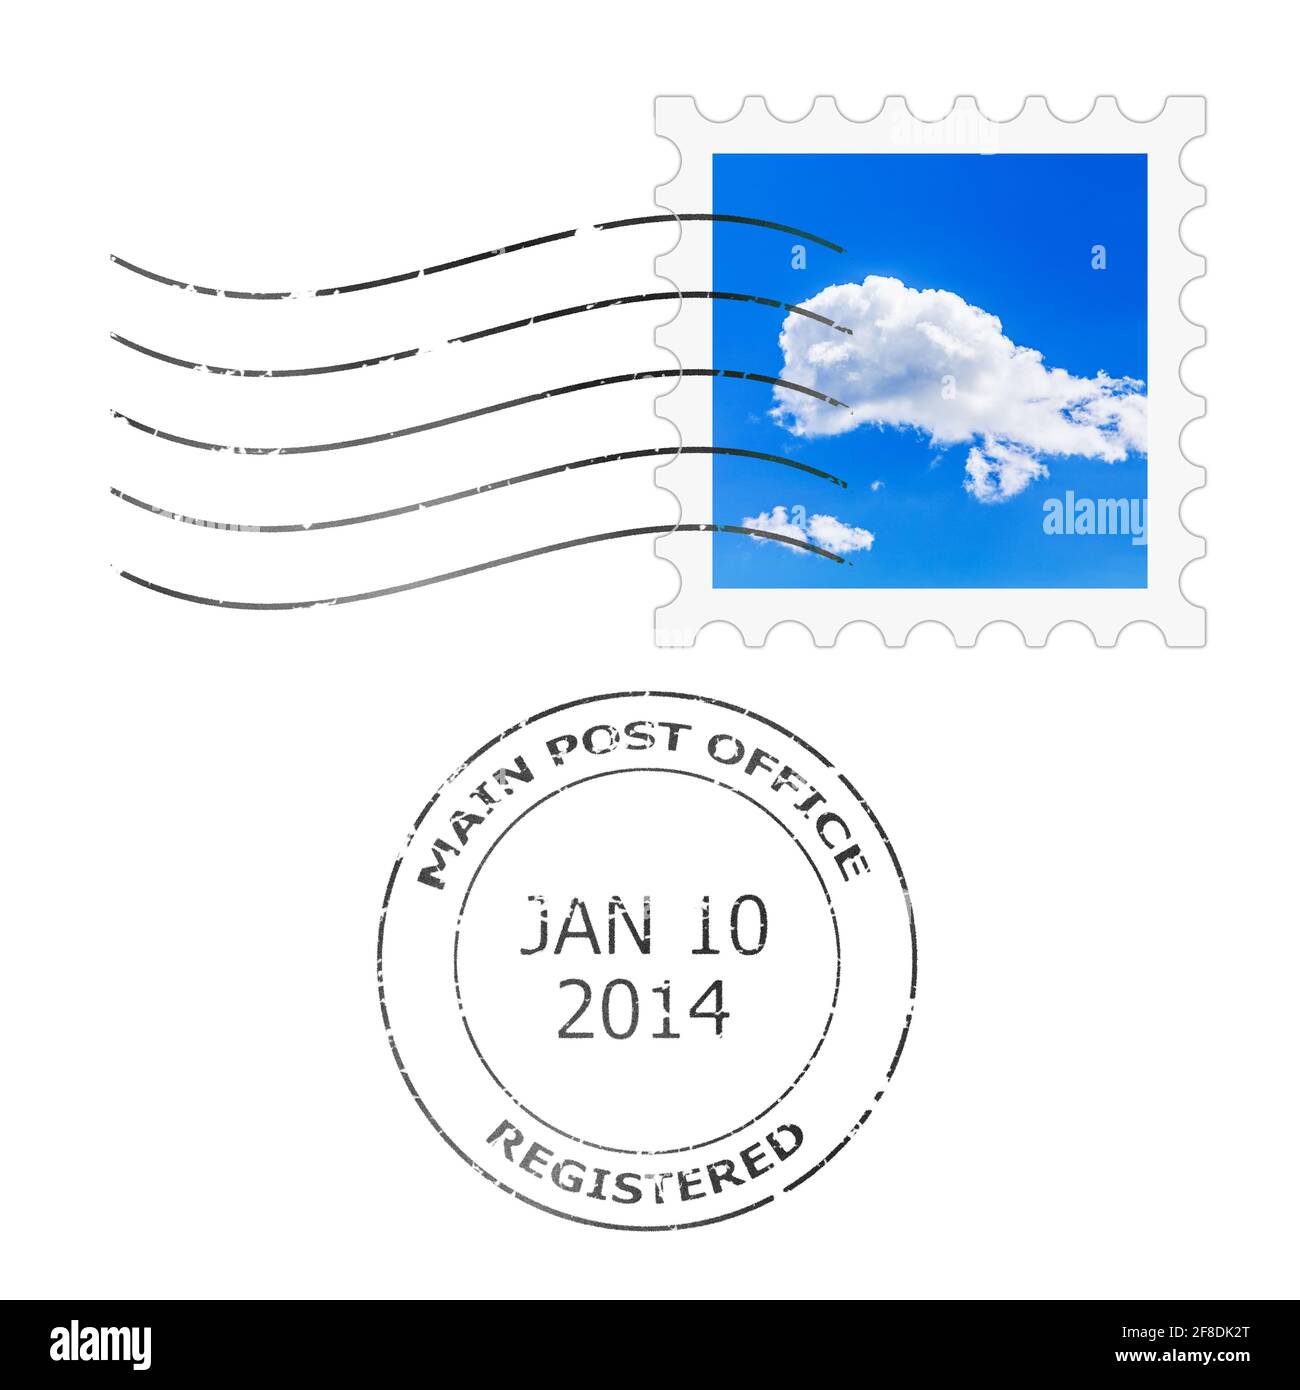 Timbre-poste et cachet de la poste pour une enveloppe à lettres Banque D'Images